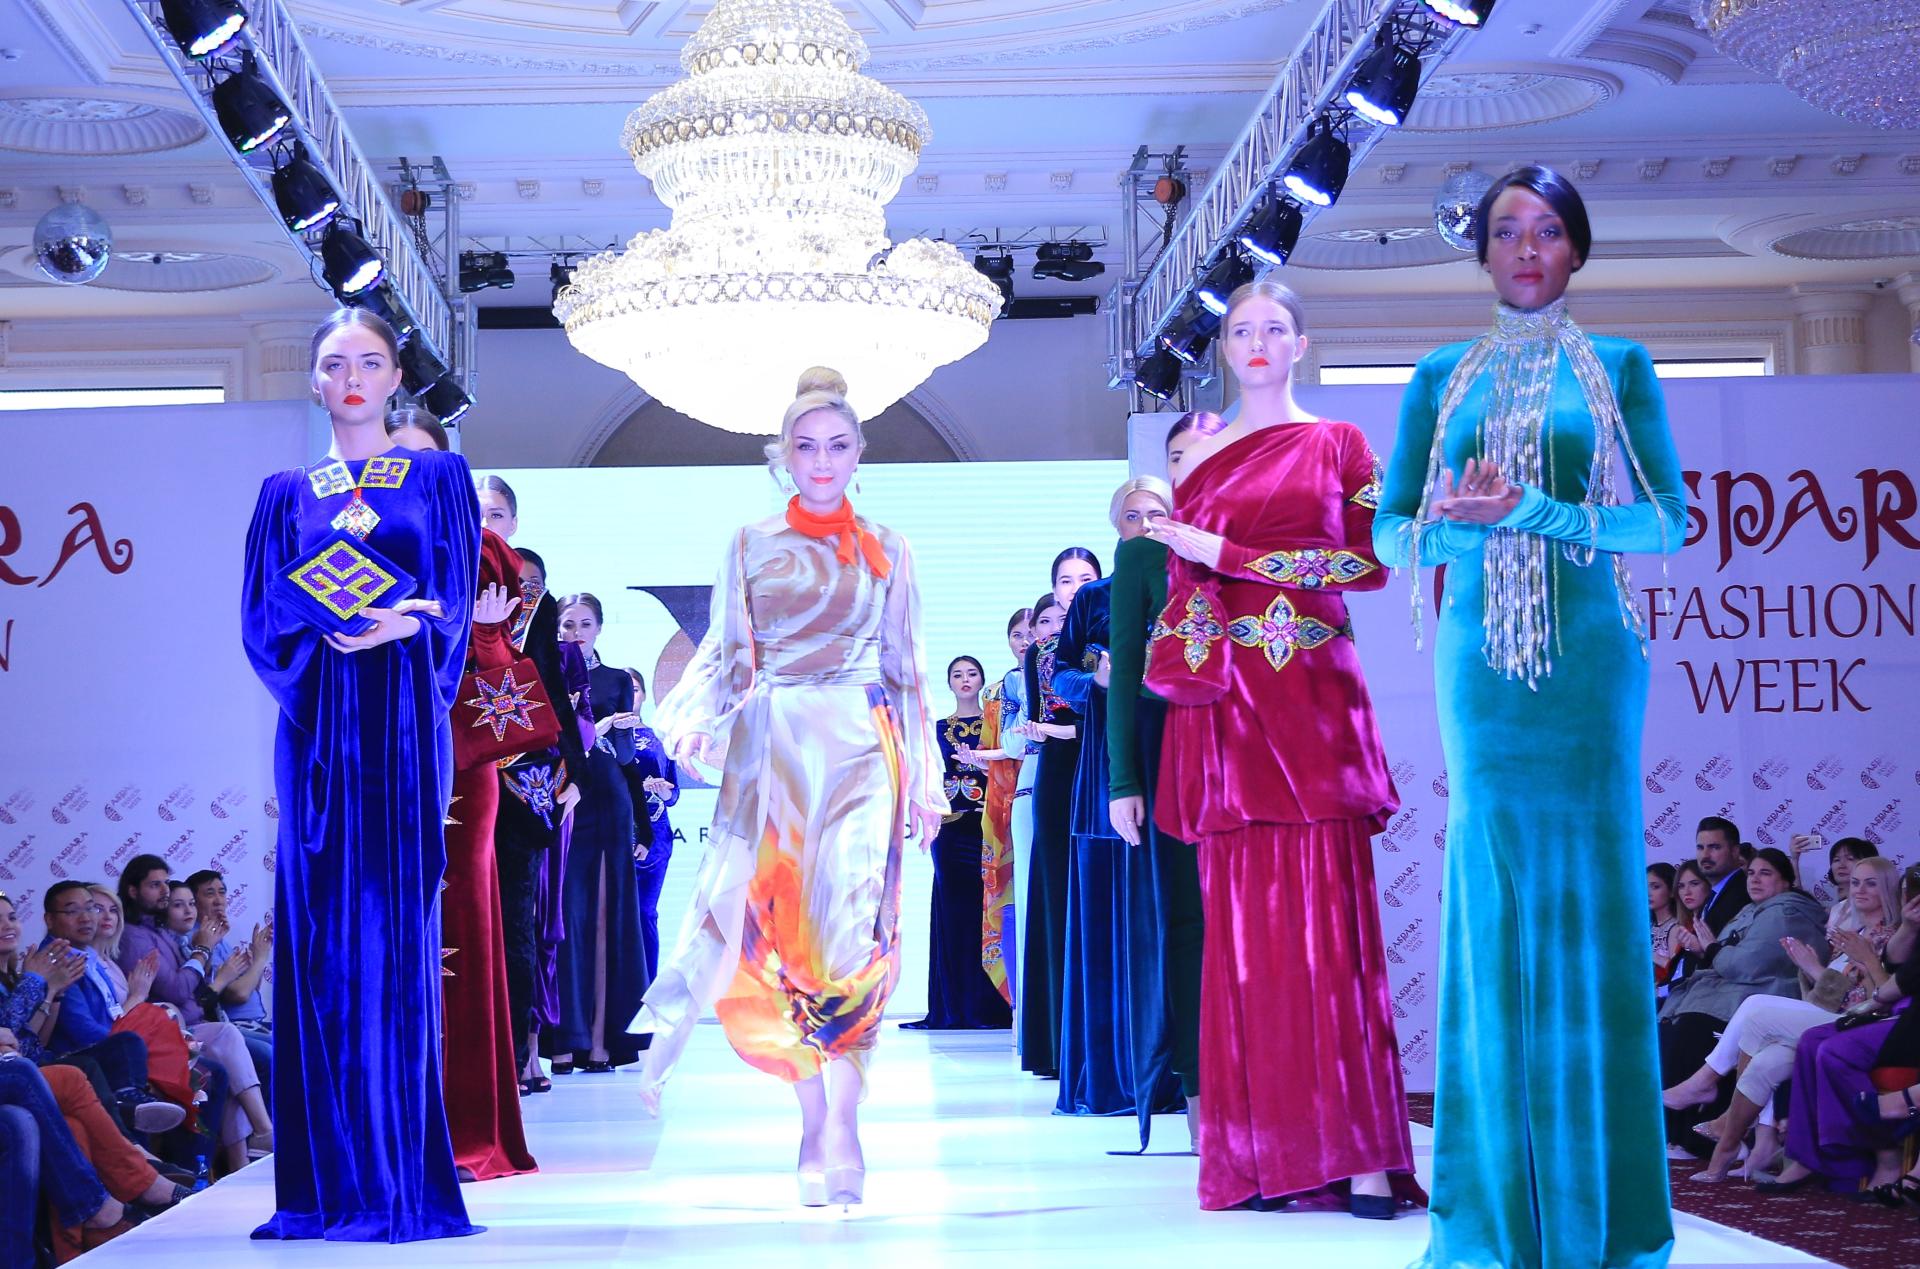 Деятели культуры Азербайджана поддержали идею учреждения Дня национального костюма  (ФОТО) - Gallery Image